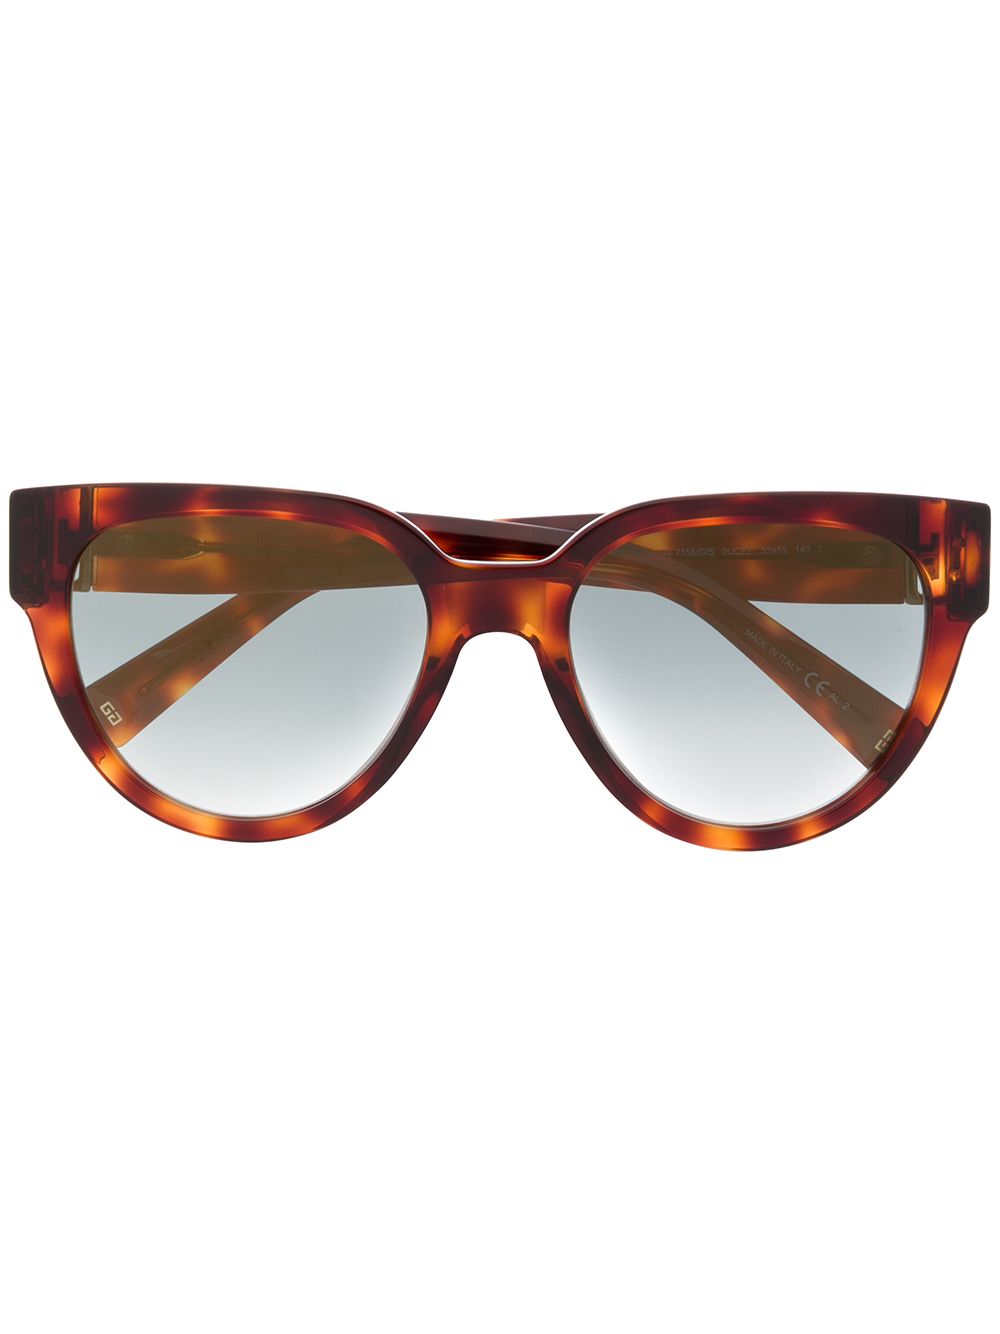 фото Givenchy eyewear солнцезащитные очки в оправе 'кошачий глаз' черепаховой расцветки